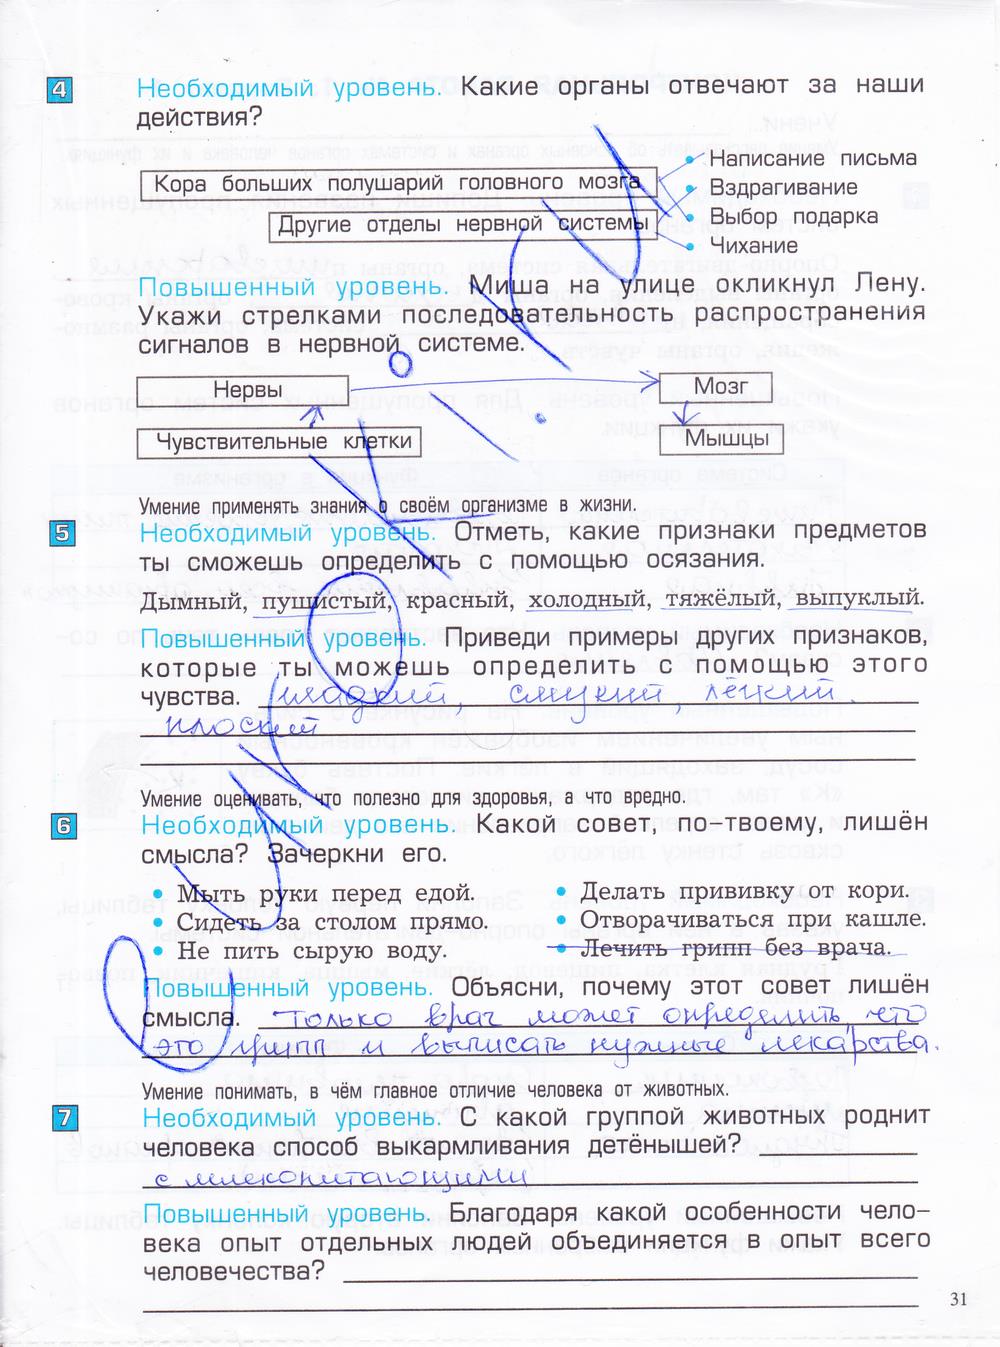 гдз 4 класс проверочные и контрольные работы часть 1 страница 31 окружающий мир Вахрушев, Бурский, Родыгина